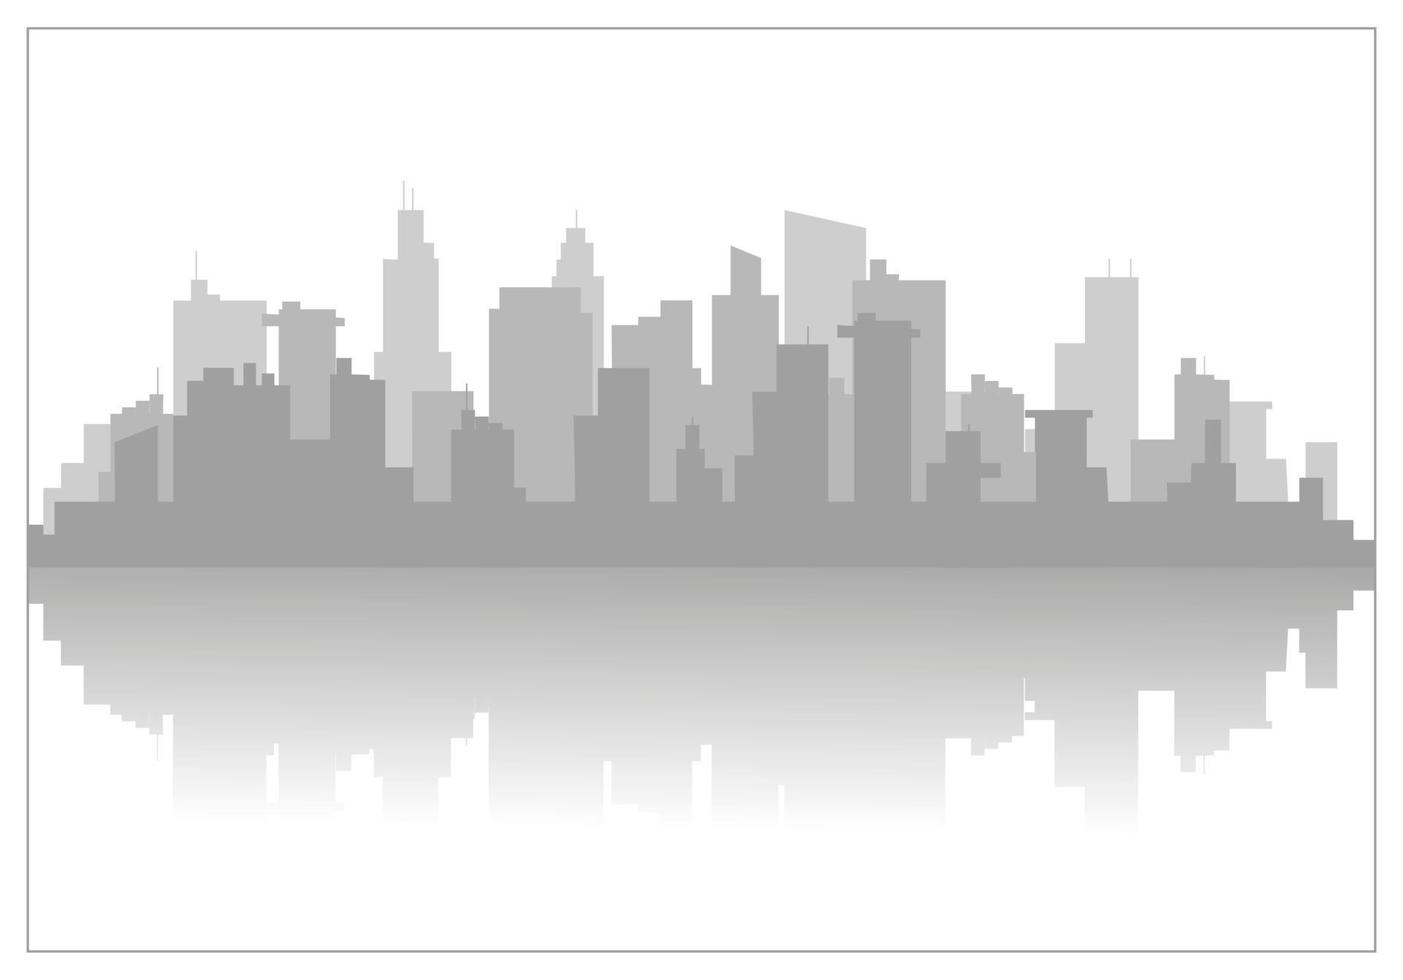 diseño moderno del horizonte de la ciudad. silueta vectorial.el fondo es una silueta de la ciudad para un sitio web o banner. concepto para un sitio web de alquiler de coches en todo el mundo vector